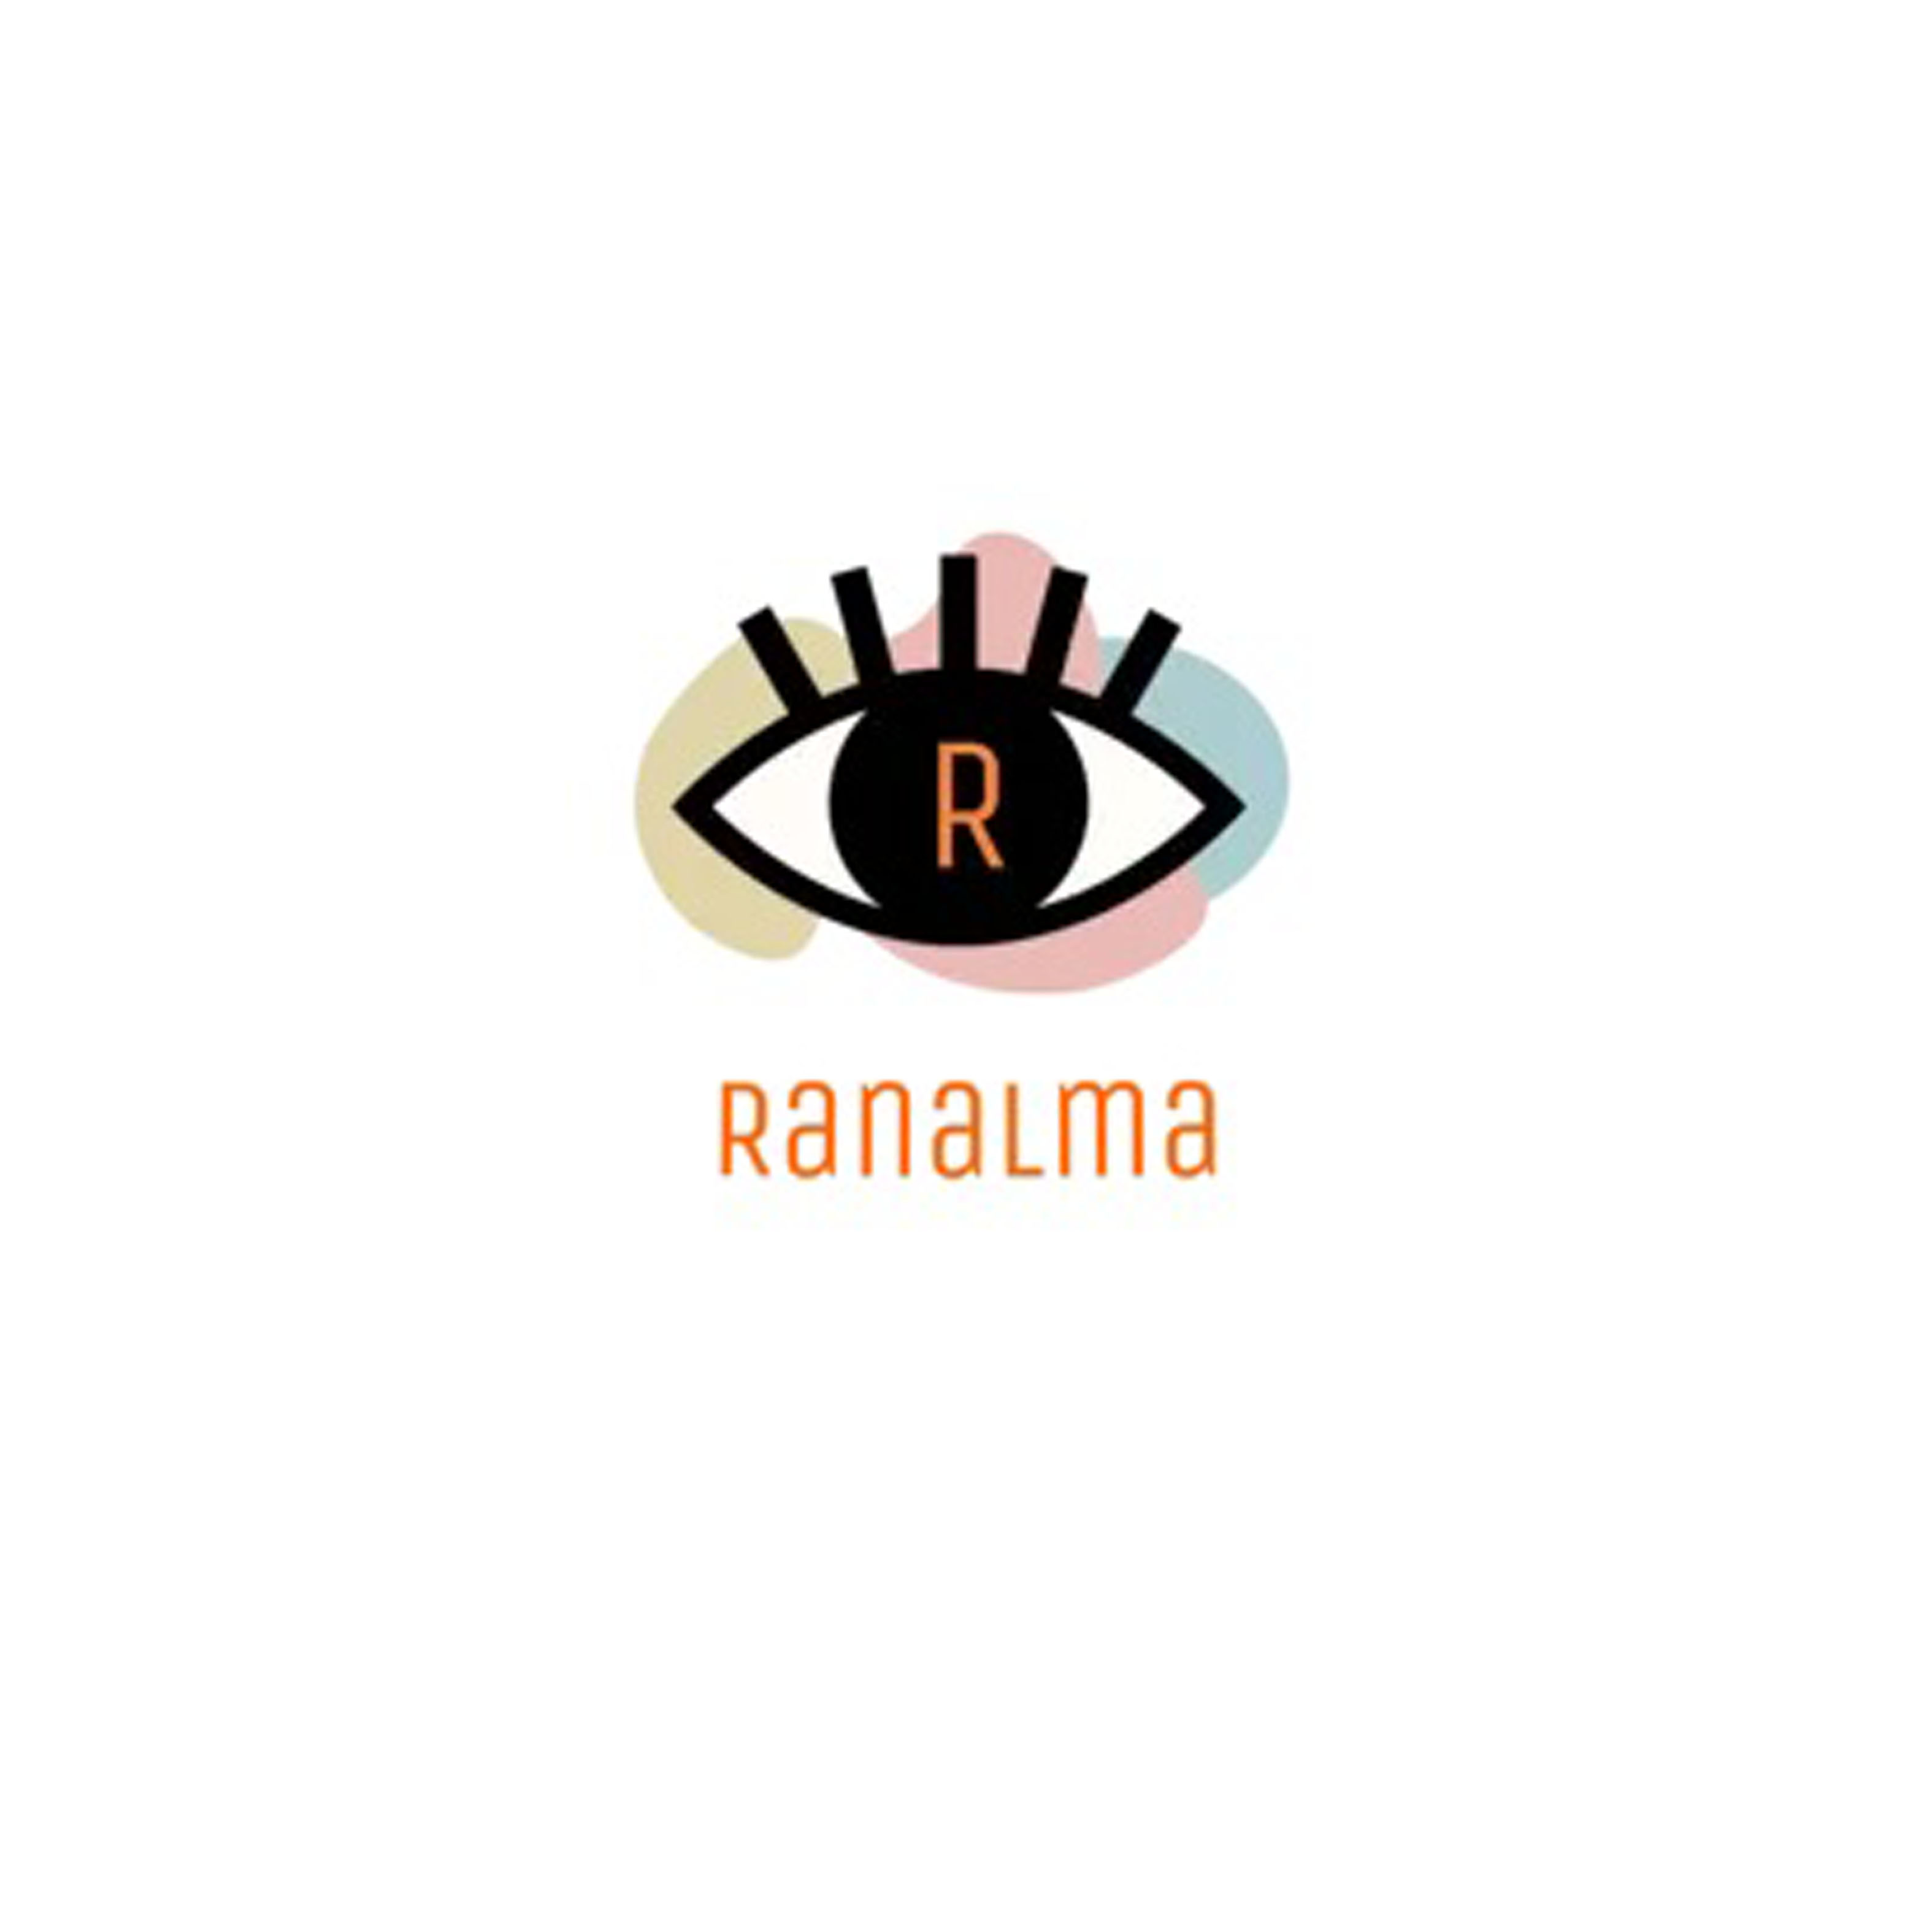 Ranalma